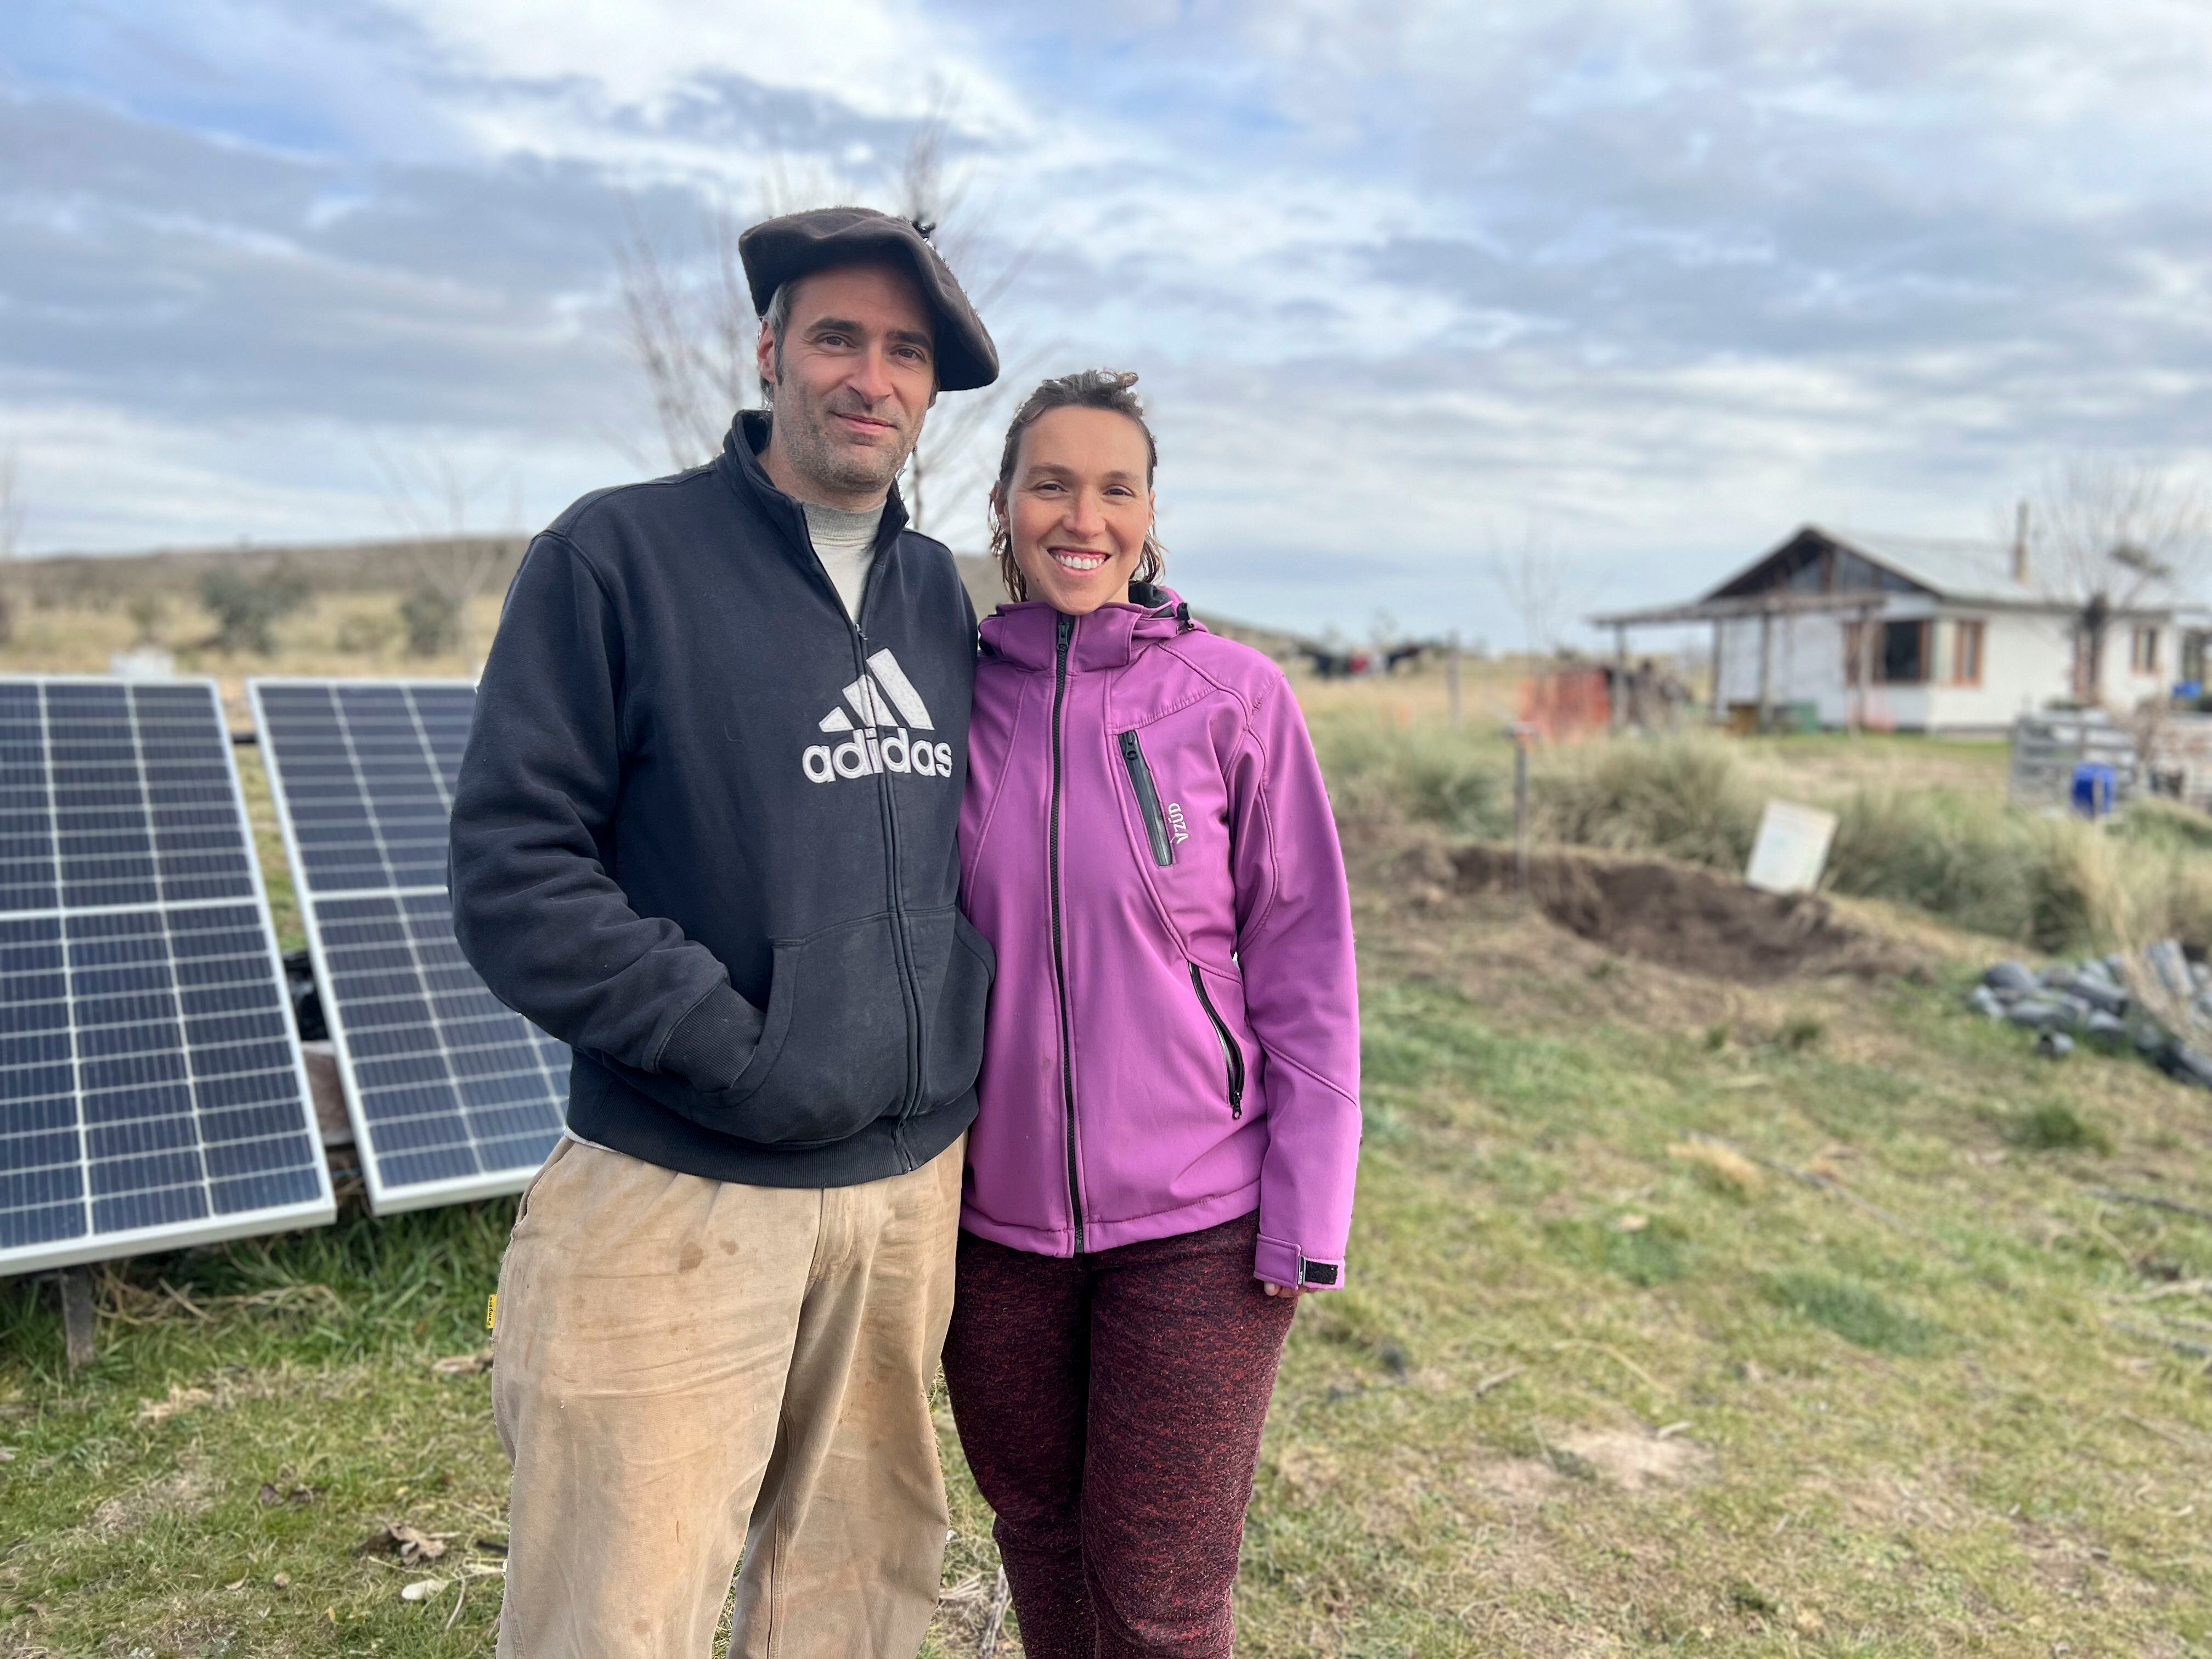 Ignacio Citti y su pareja frente a los paneles solares.